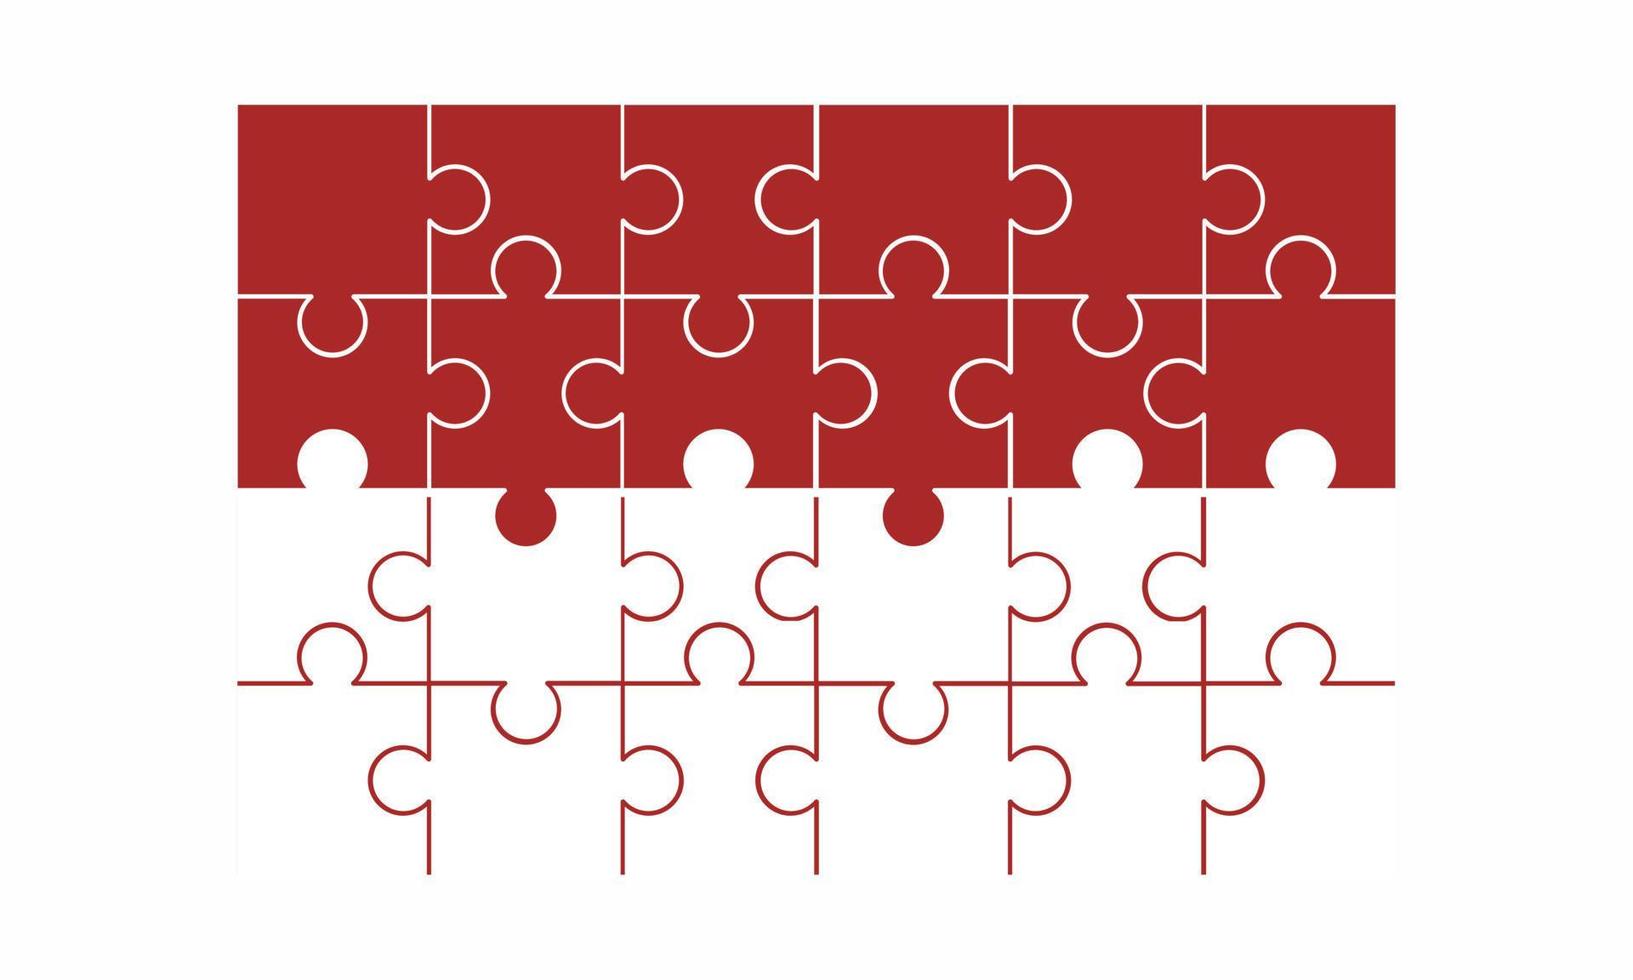 Indonesië vlag natie land in puzzel puzzel set van 24 gratis vector plat ontwerp met verschillende soorten vorm klaar voor gebruik en bewerkbare gratis vector